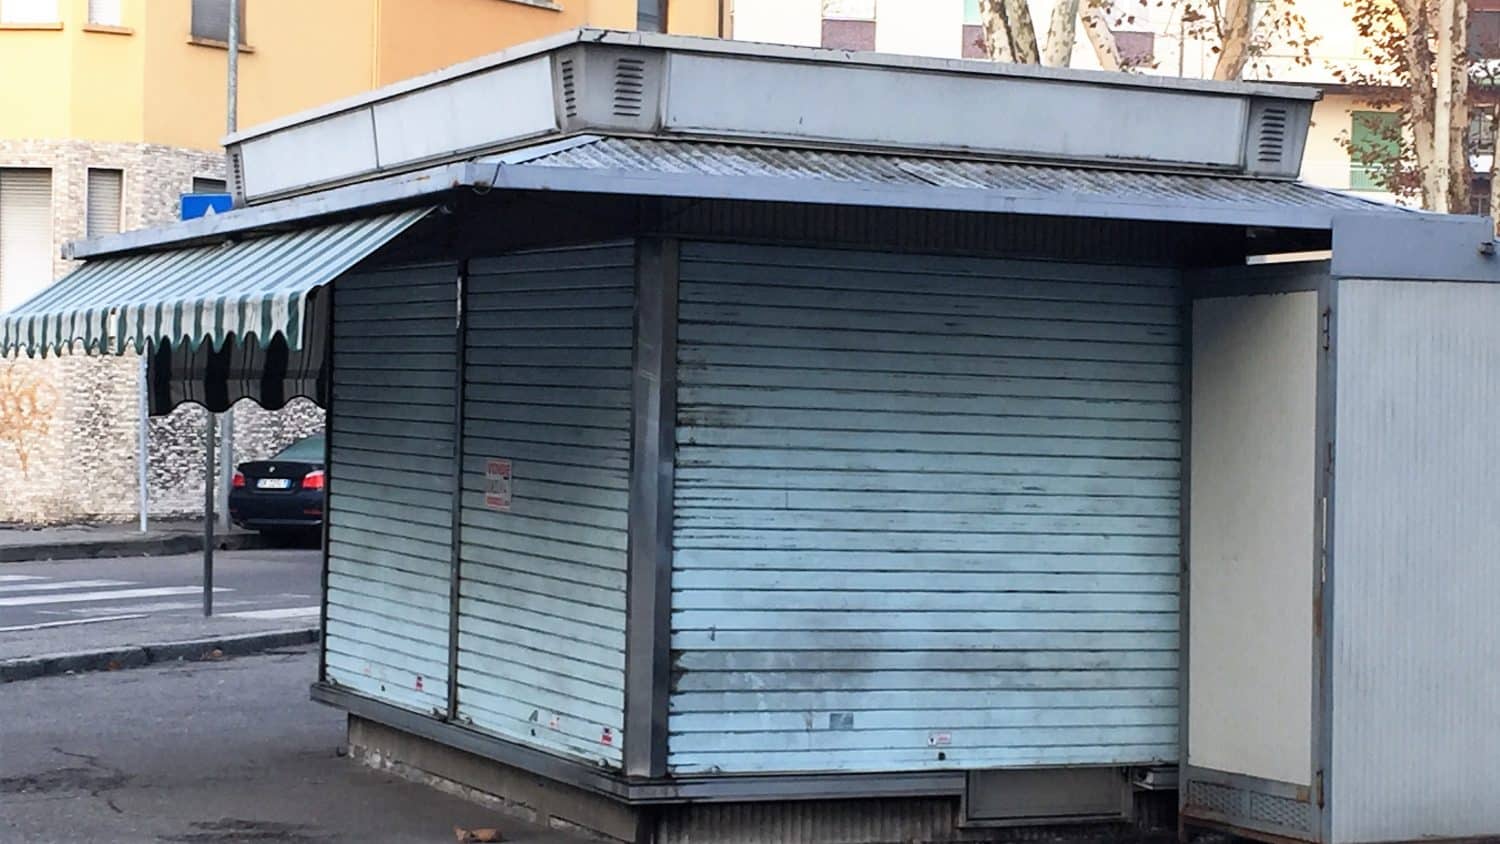 Catania, al via bando per assegnare spazi edicole cessate e farli diventare Chioschi: le info